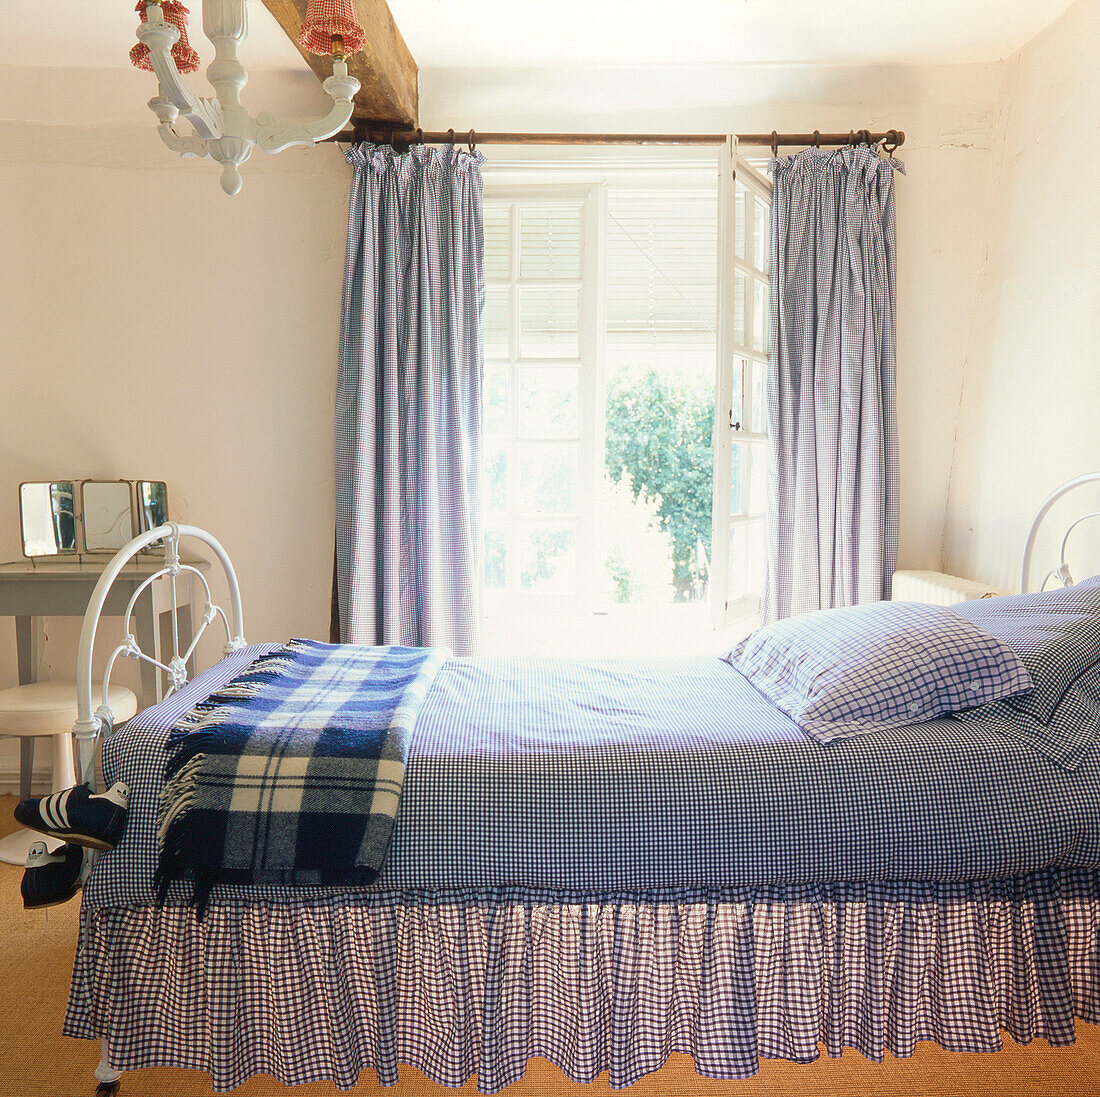 Blaues und weißes Schlafzimmer im Landhausstil